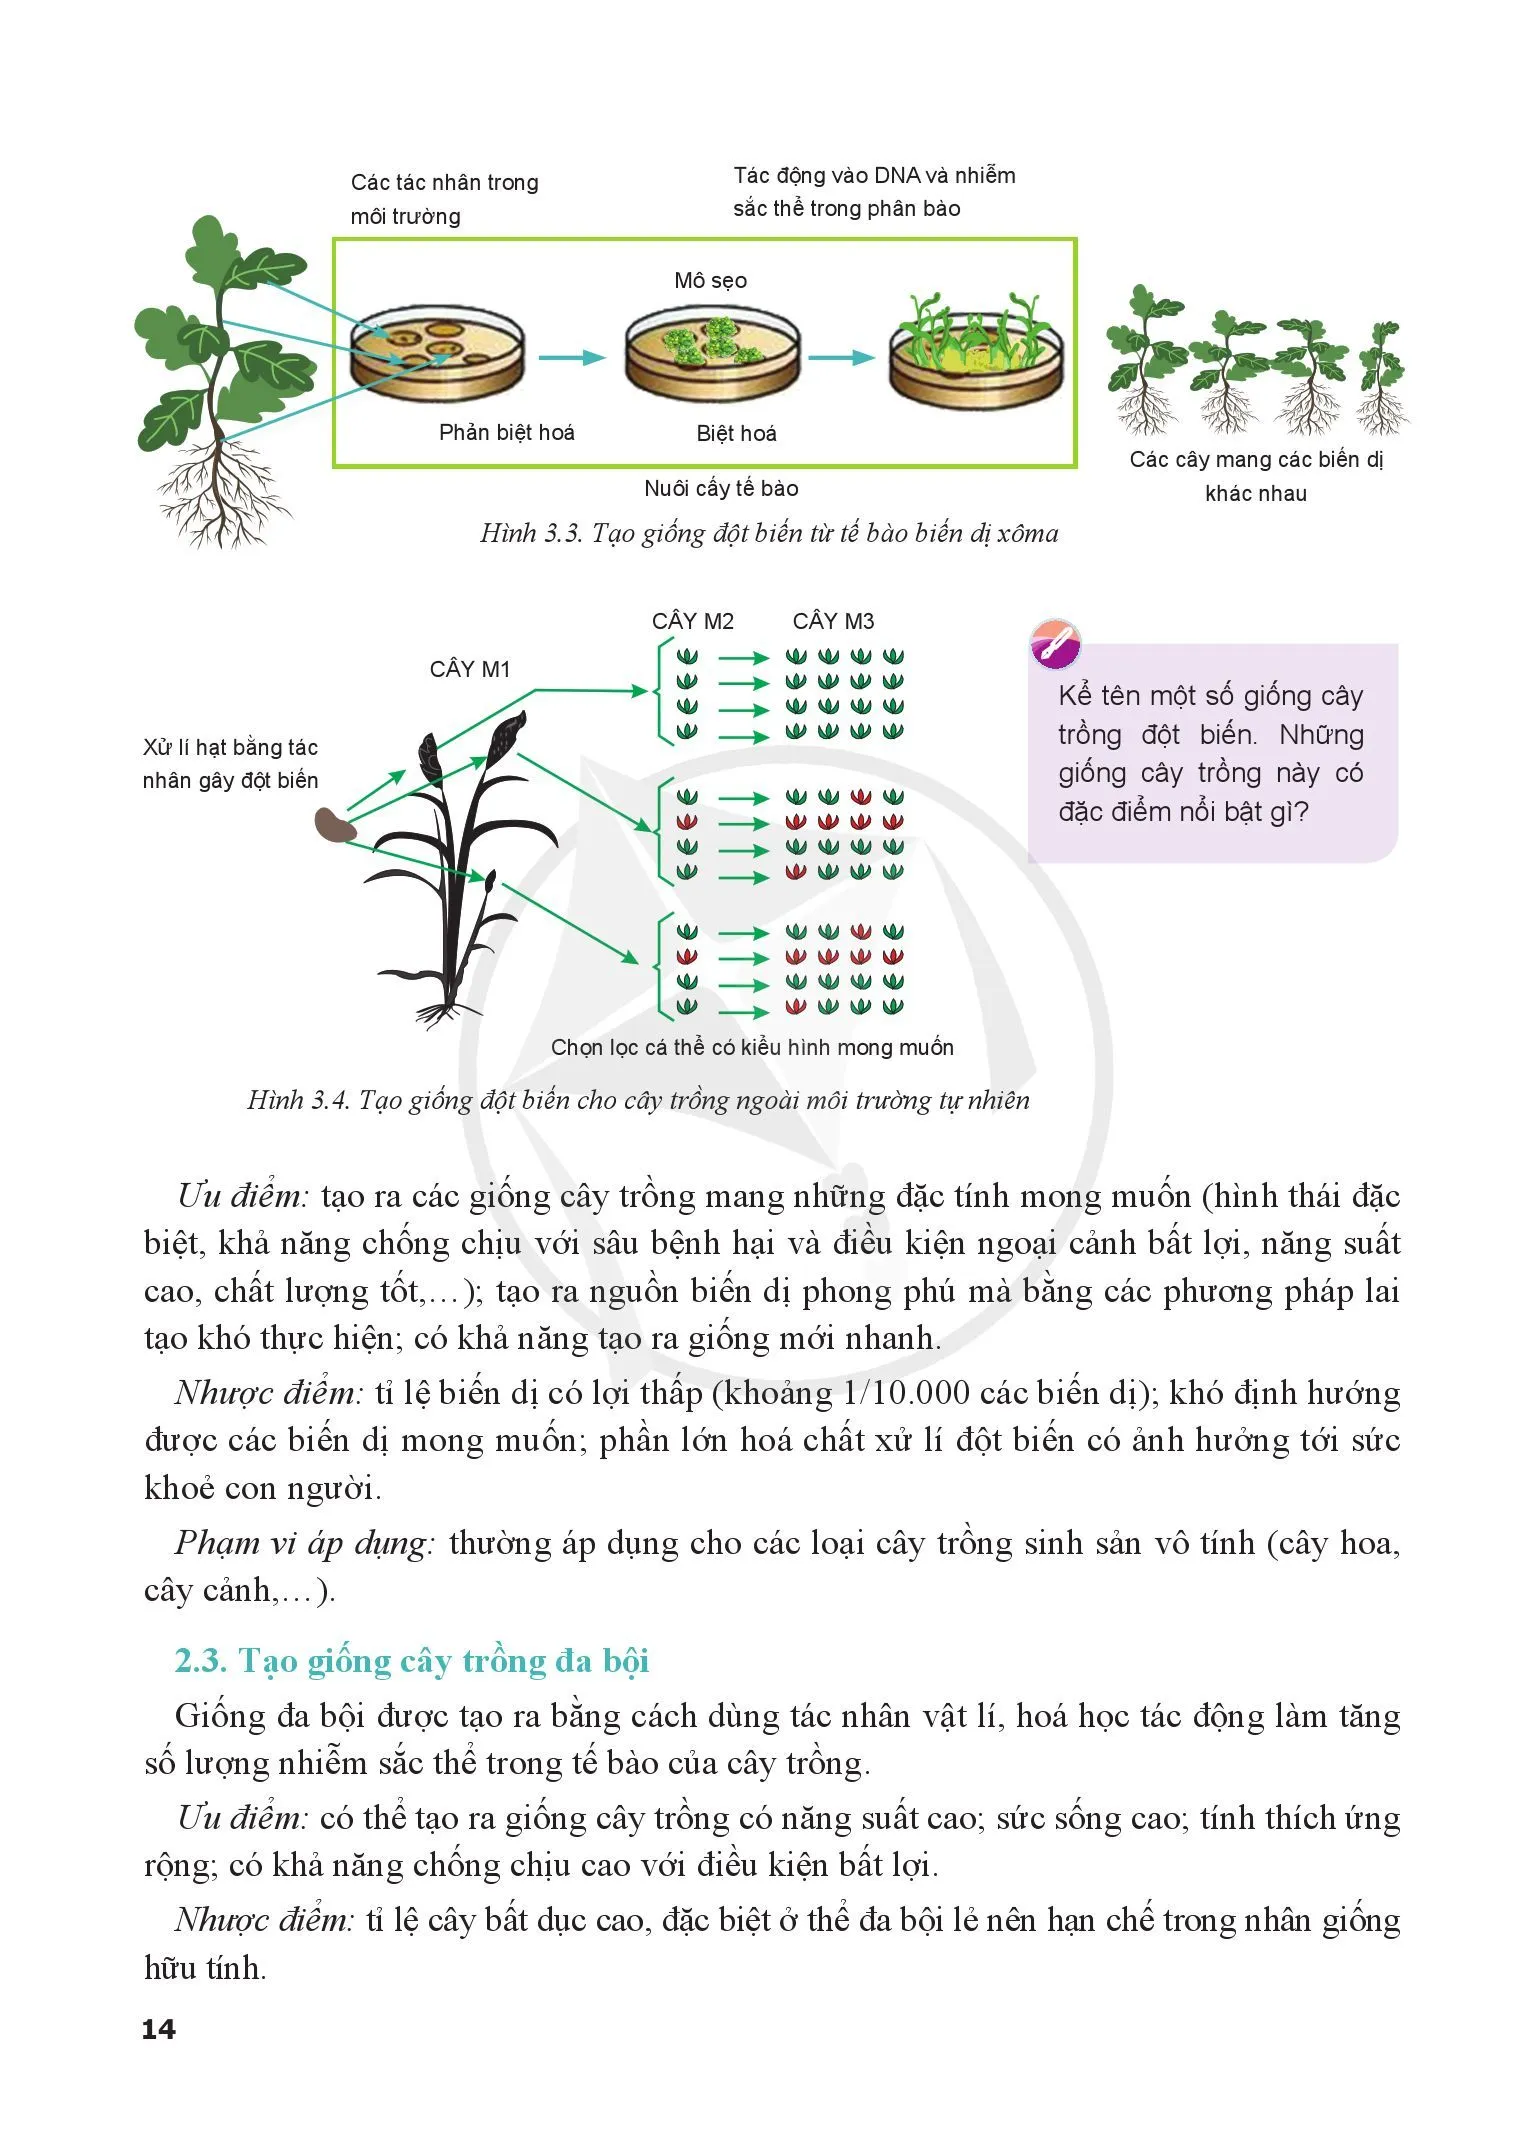 Bài 3. Ứng dụng công nghệ sinh học trong chọn tạo giống cây trồng